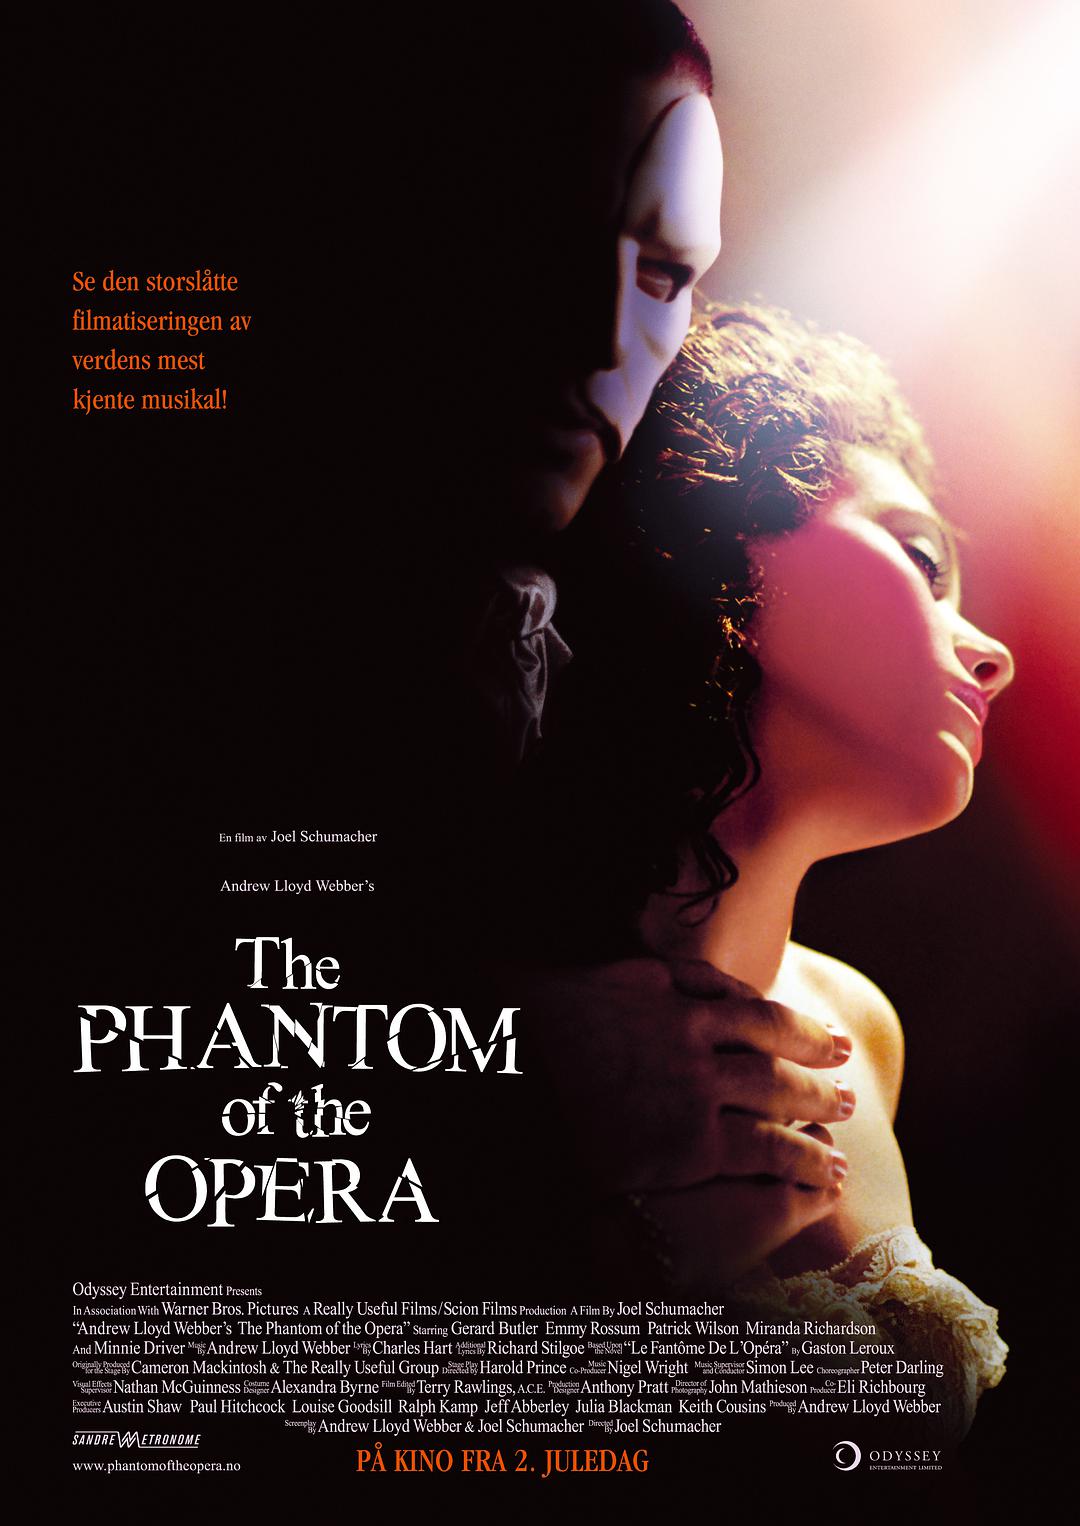 歌剧魅影 4K 蓝光原盘下载+高清MKV版/歌声魅影(港)/安德鲁洛伊韦伯之歌剧魅影(台)/歌剧院幽灵/剧院魅影 2004 The Phantom of the Opera 59.45G